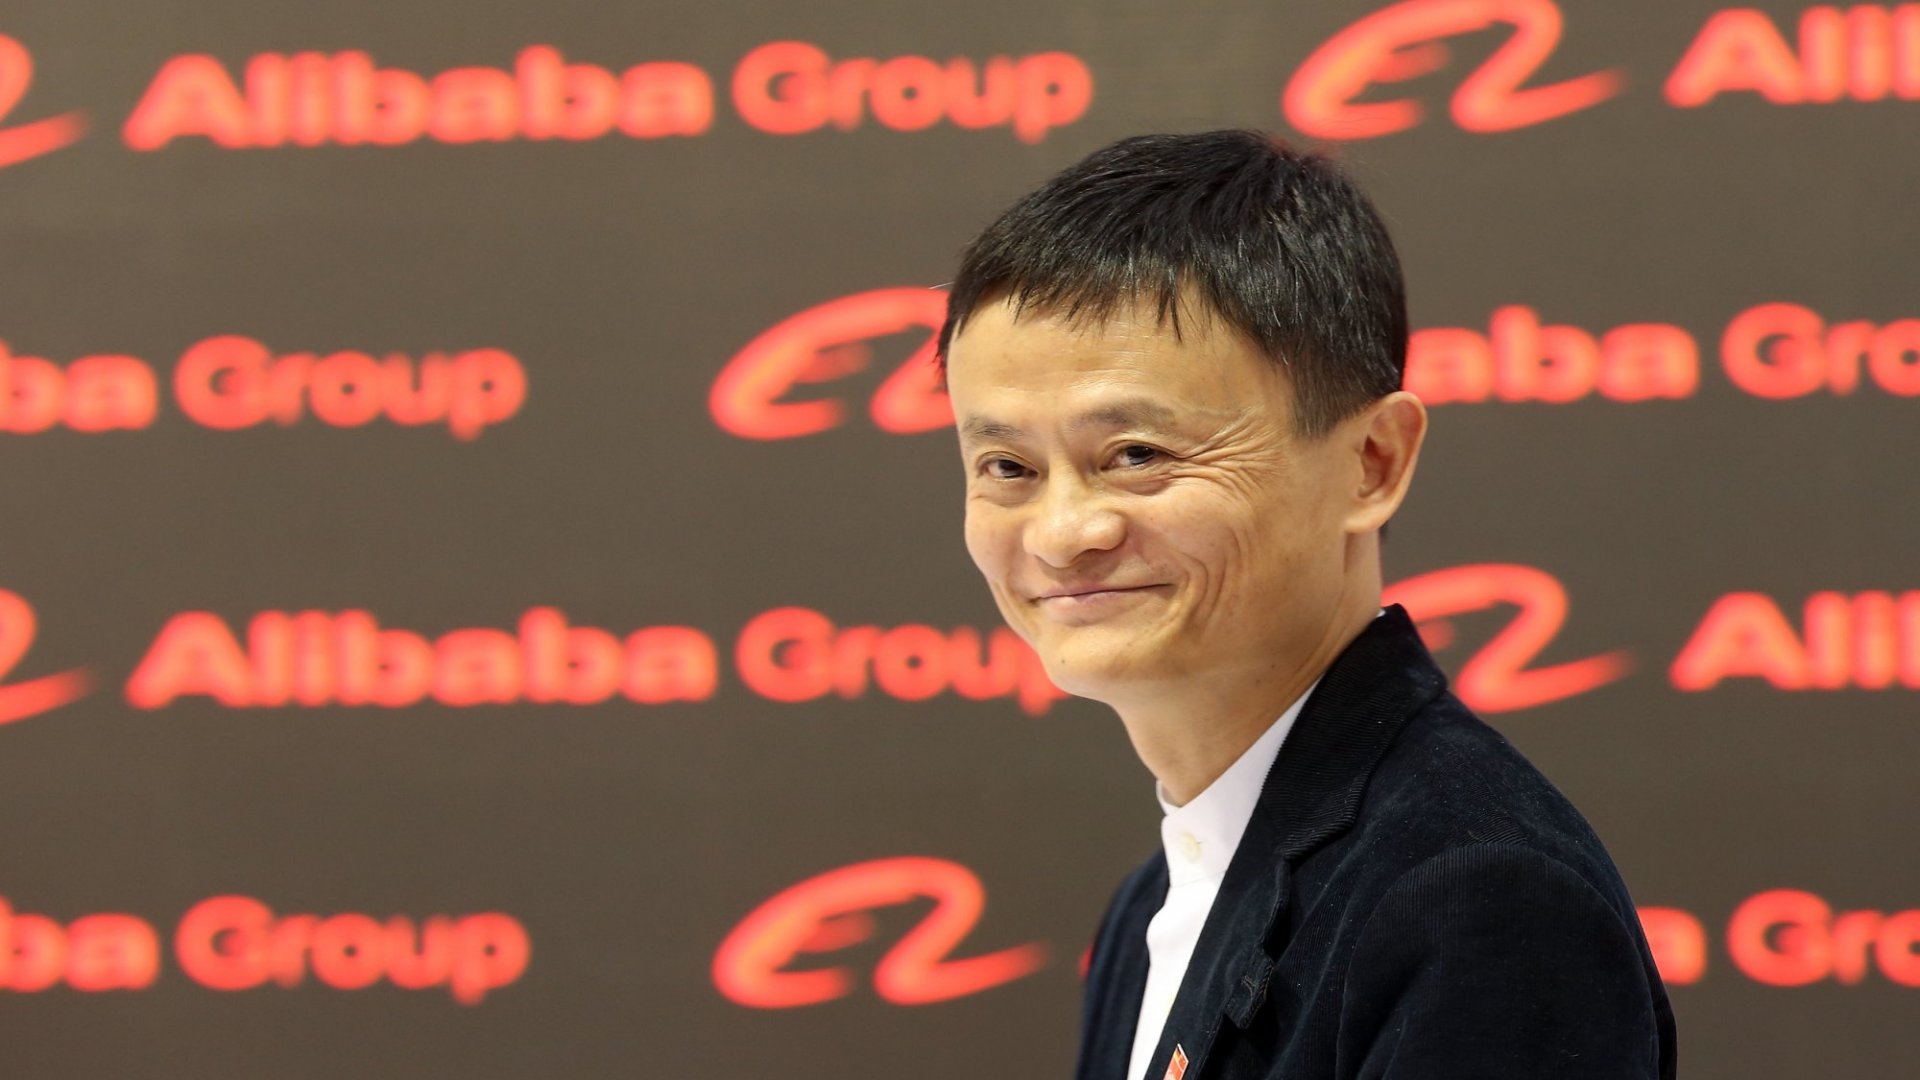 Jack Ma: "Ajo që dëshiroj t'ju mësoj fëmijëve është se si të jenë më humanë"